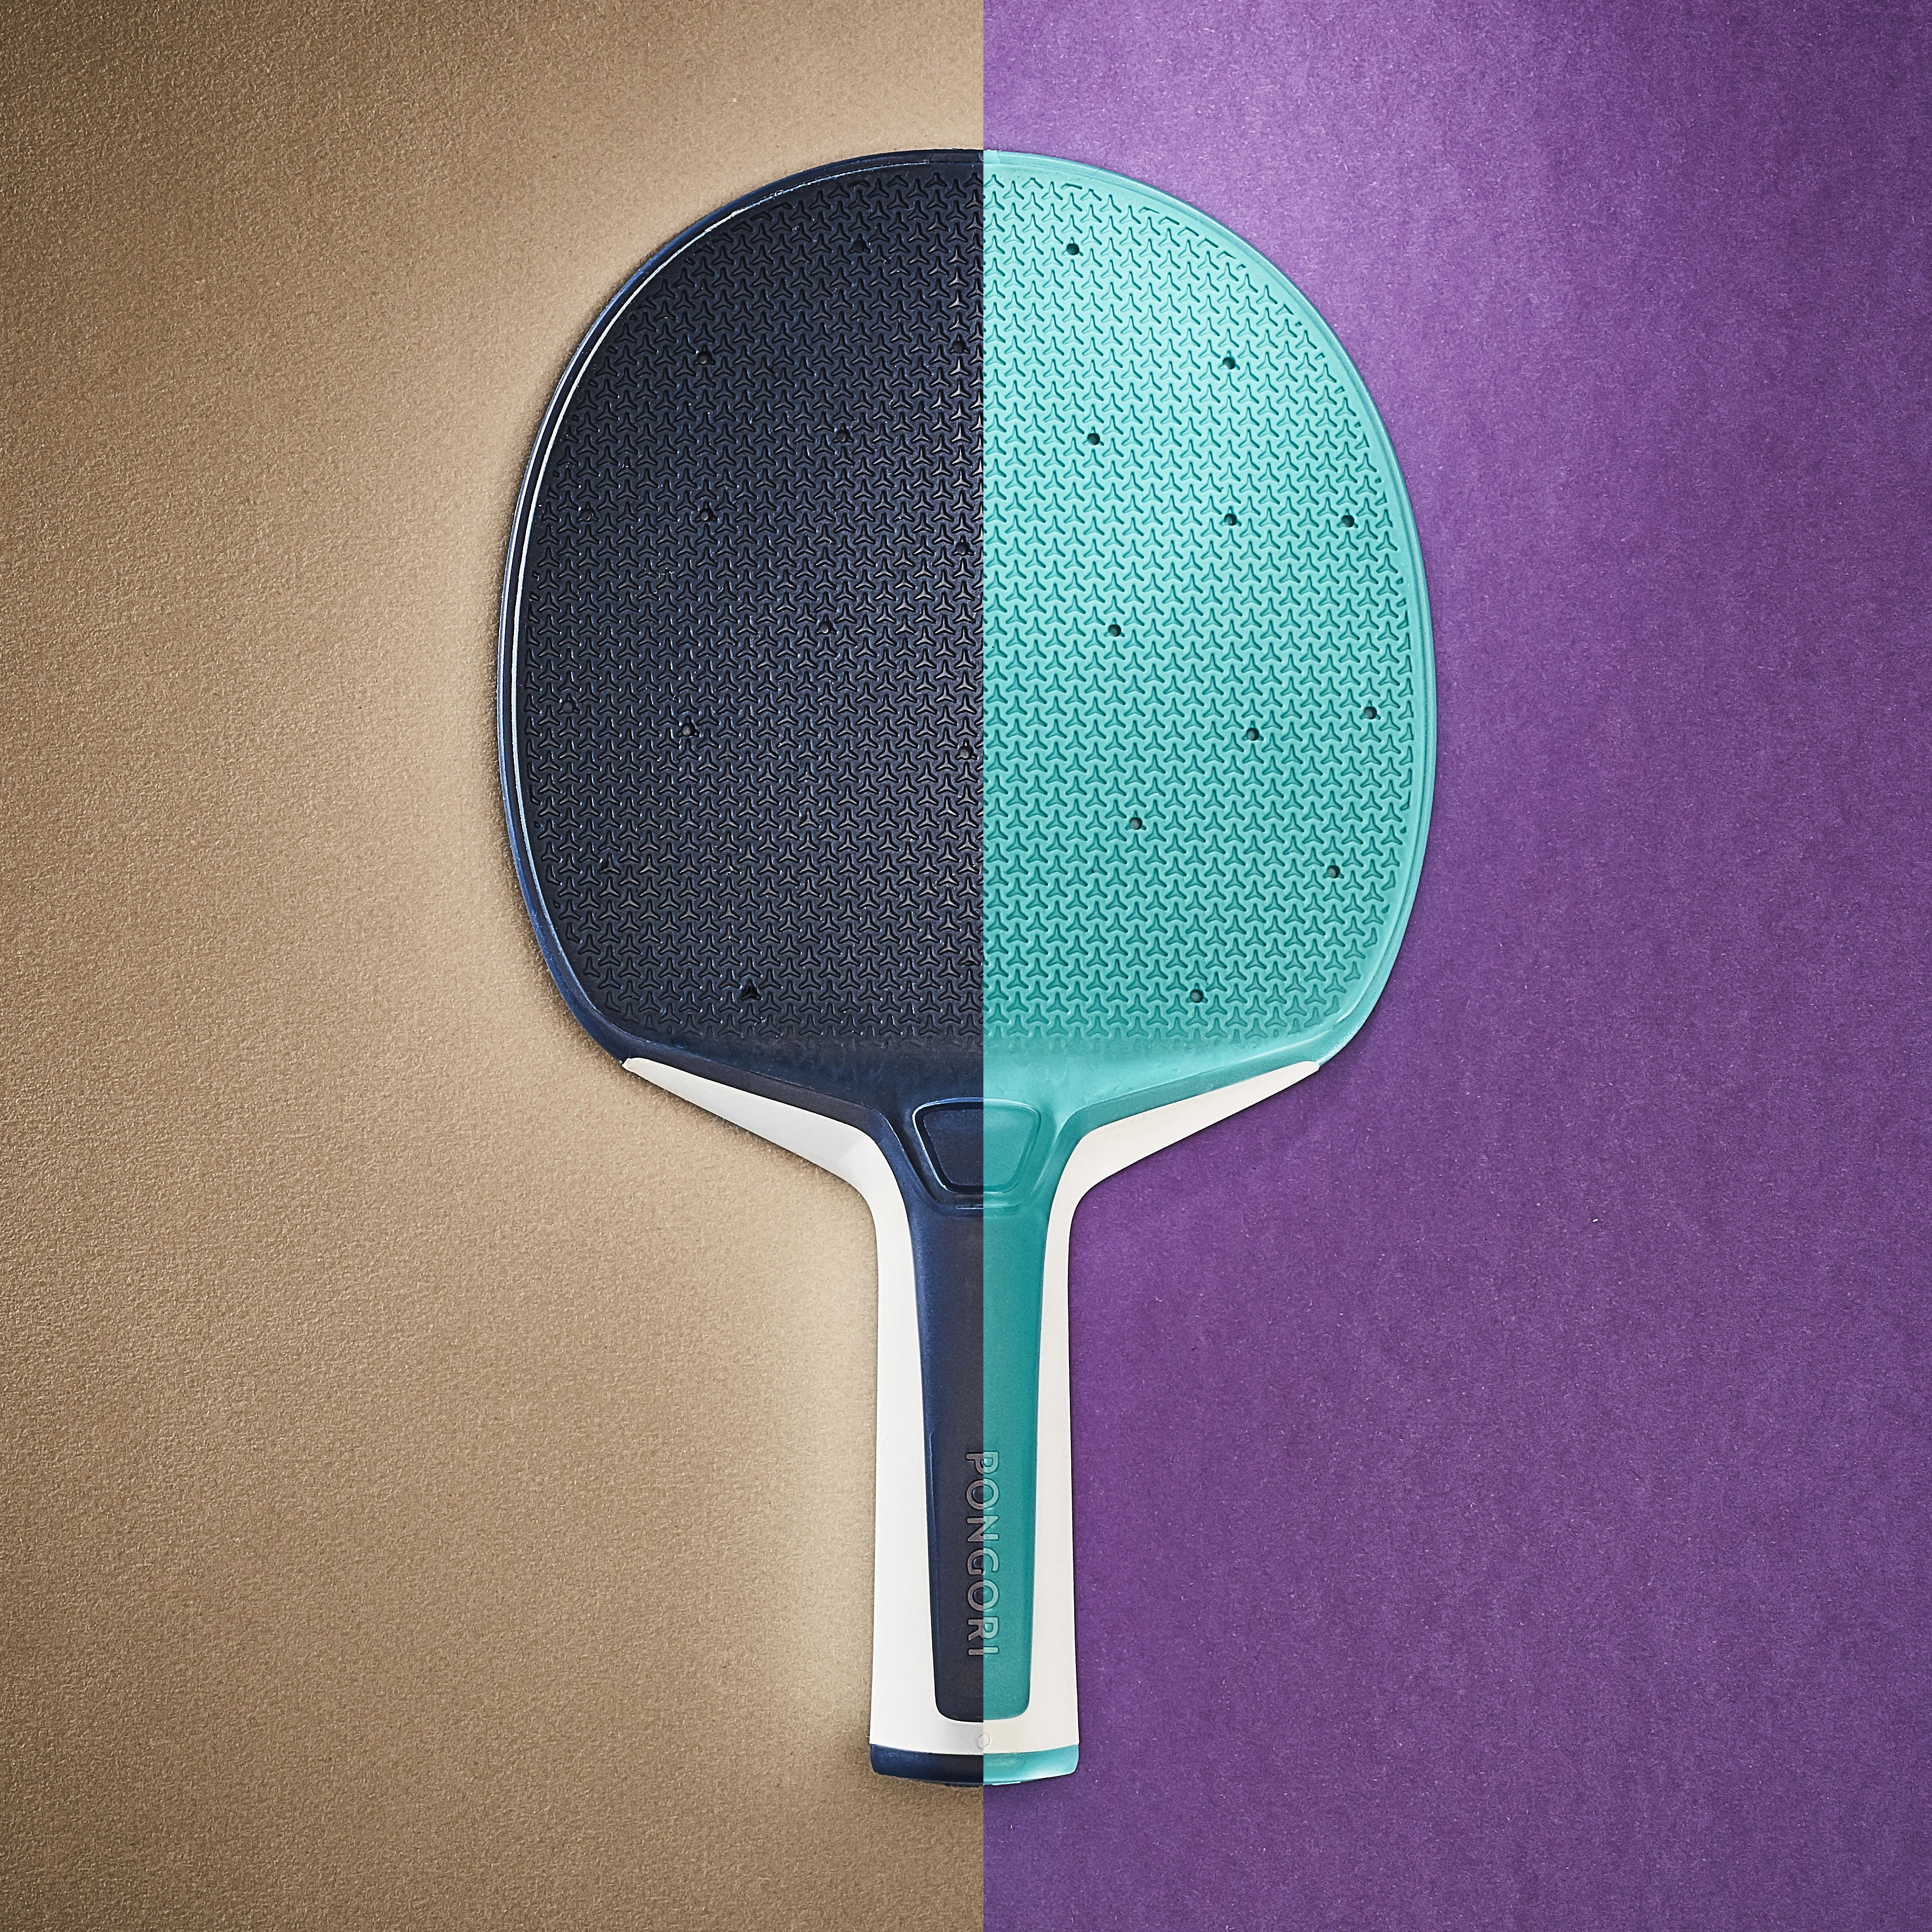 Paddle Ping Pong Set di 2 Racchette da Ping Pong Professional con 3 Palline Adatte per i Giocatori con Grip a Mano Yosoo Health Gear Racchetta e Palline da Ping-Pong 